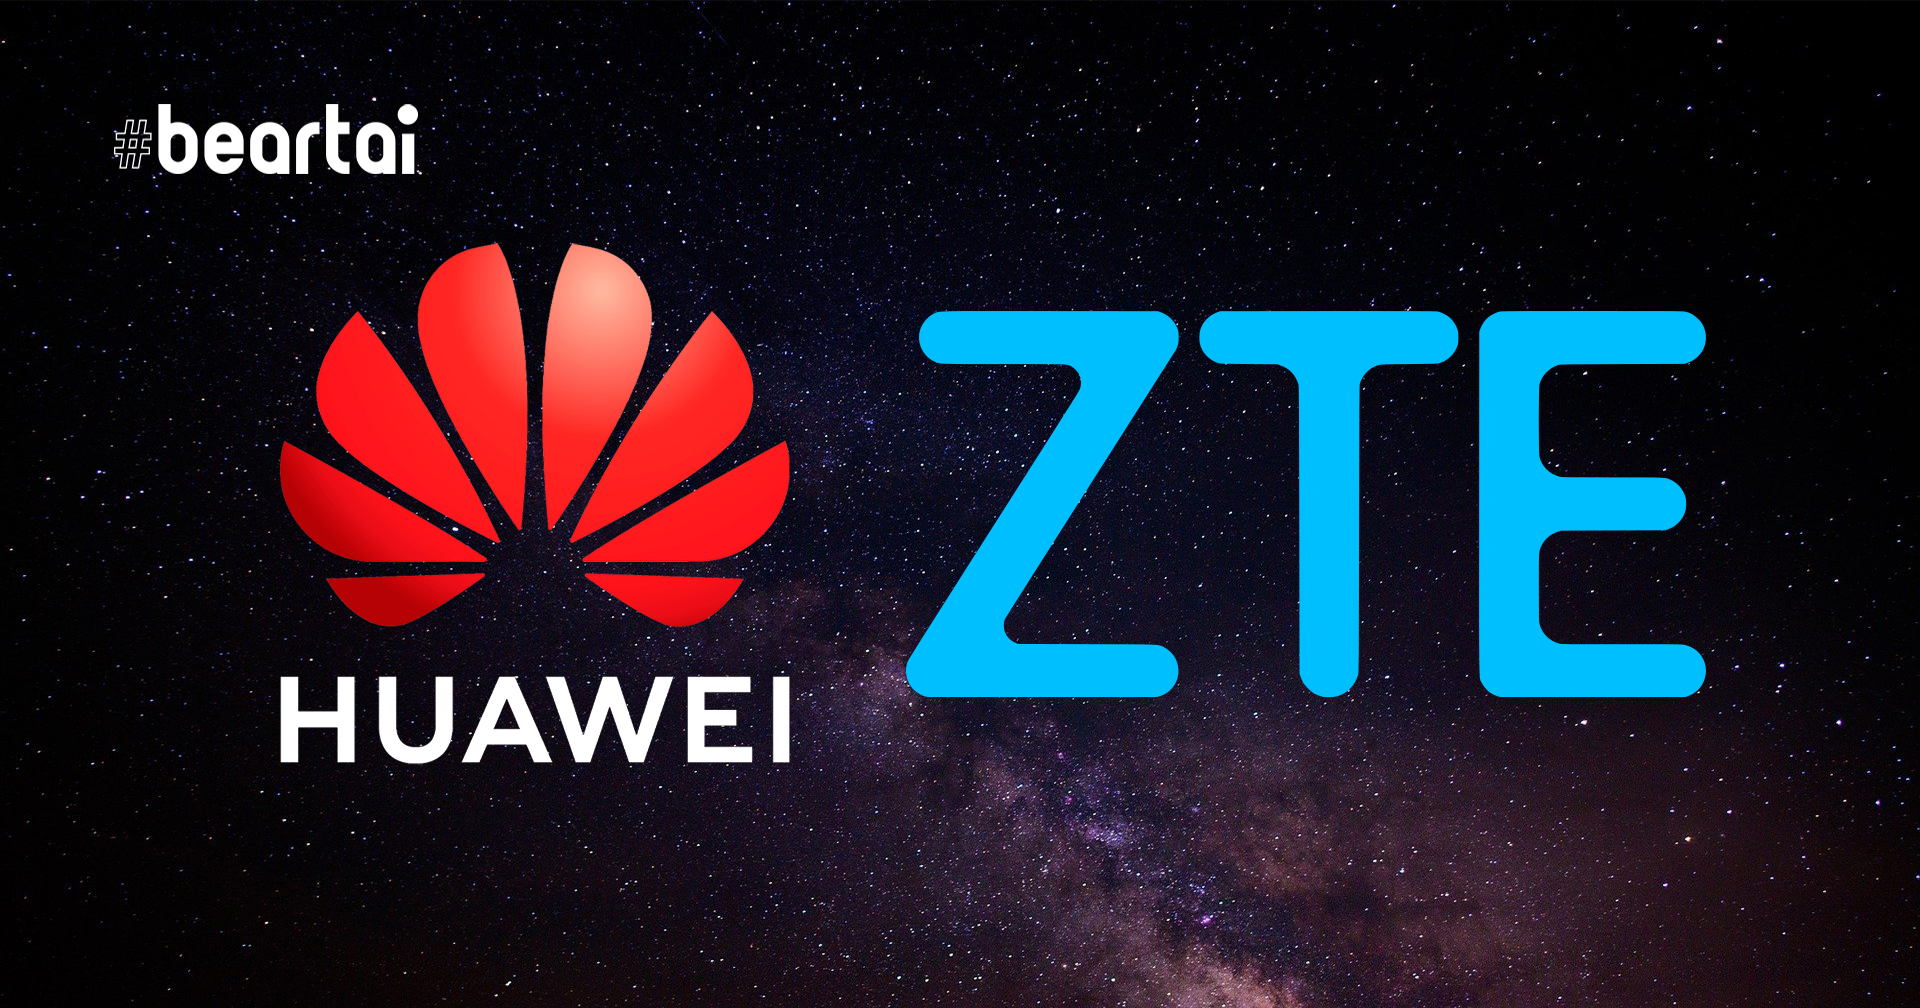 บัลแกเรียเข้าร่วมโครงการเครือข่ายสะอาดของสหรัฐฯ ส่อแววไม่เอา Huawei และ ZTE